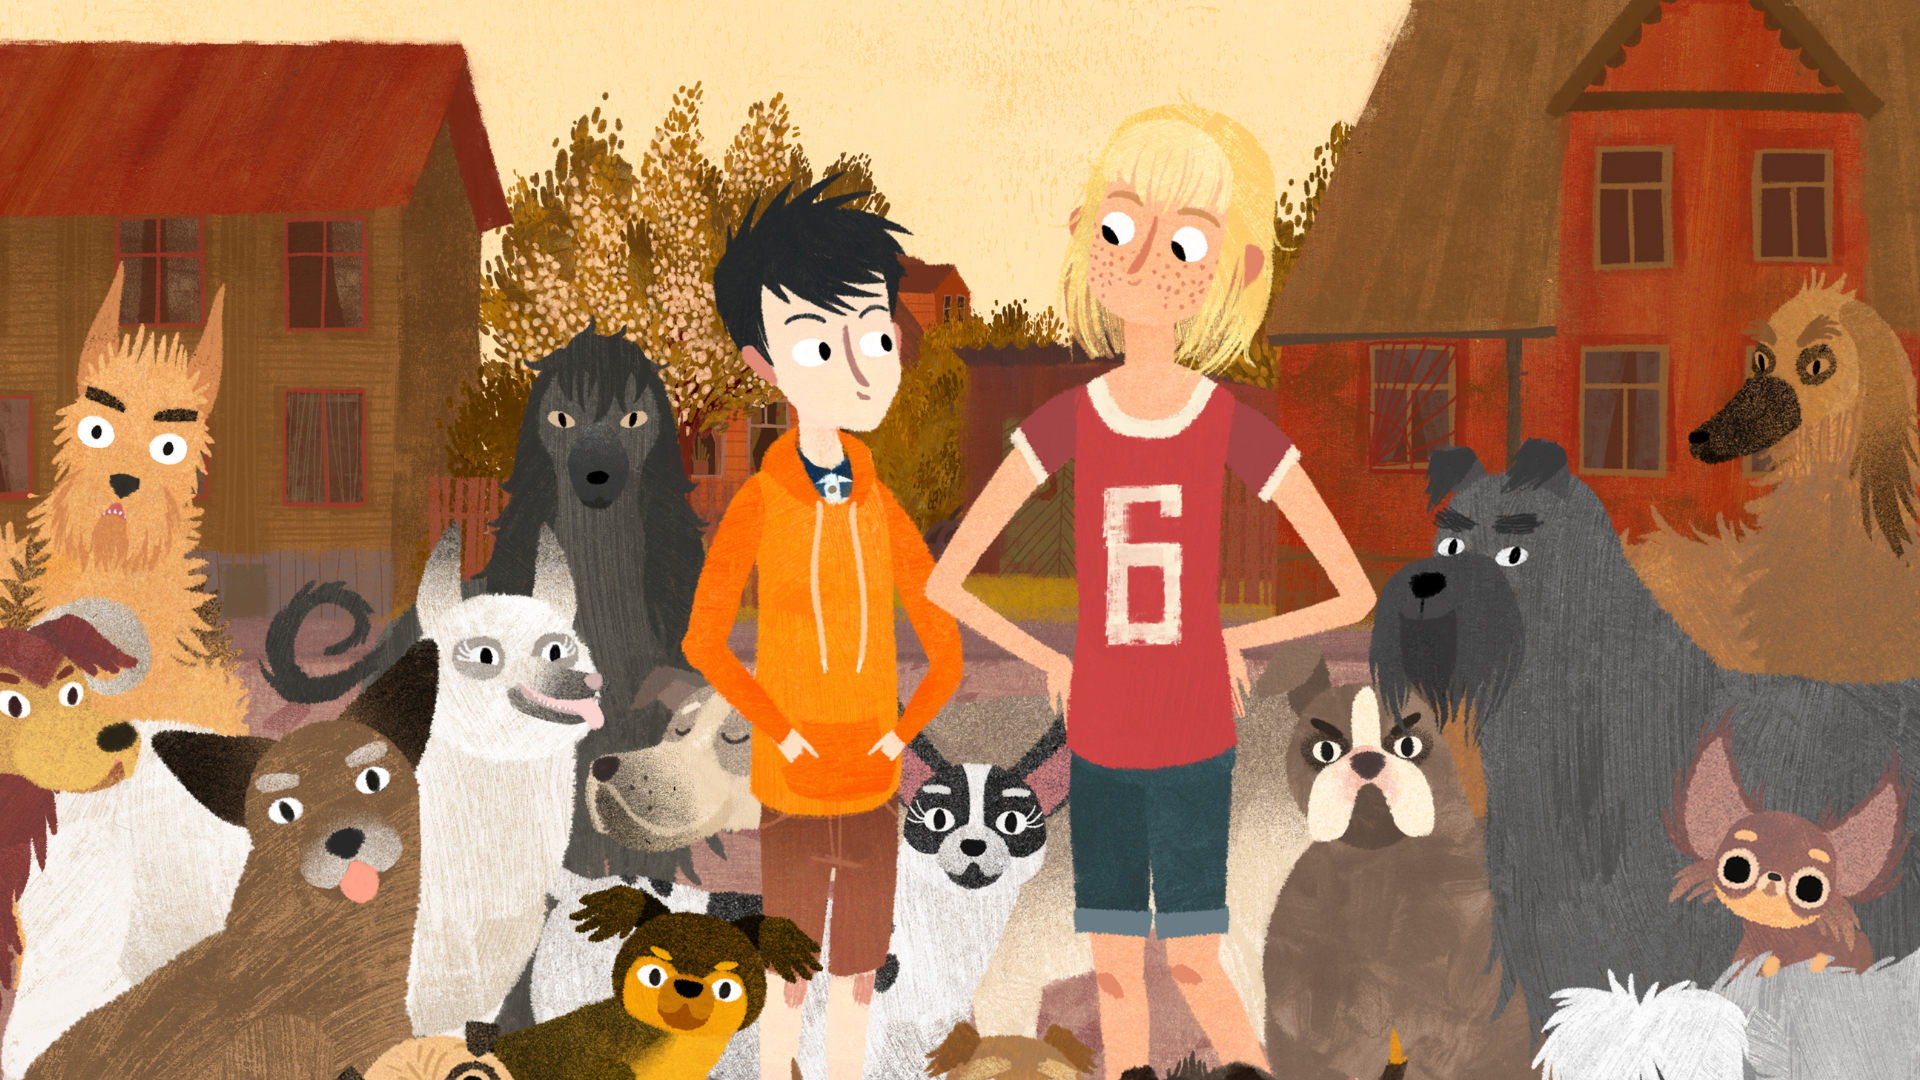 Projecció: “Jacob, Mimi i els gossos del barri”